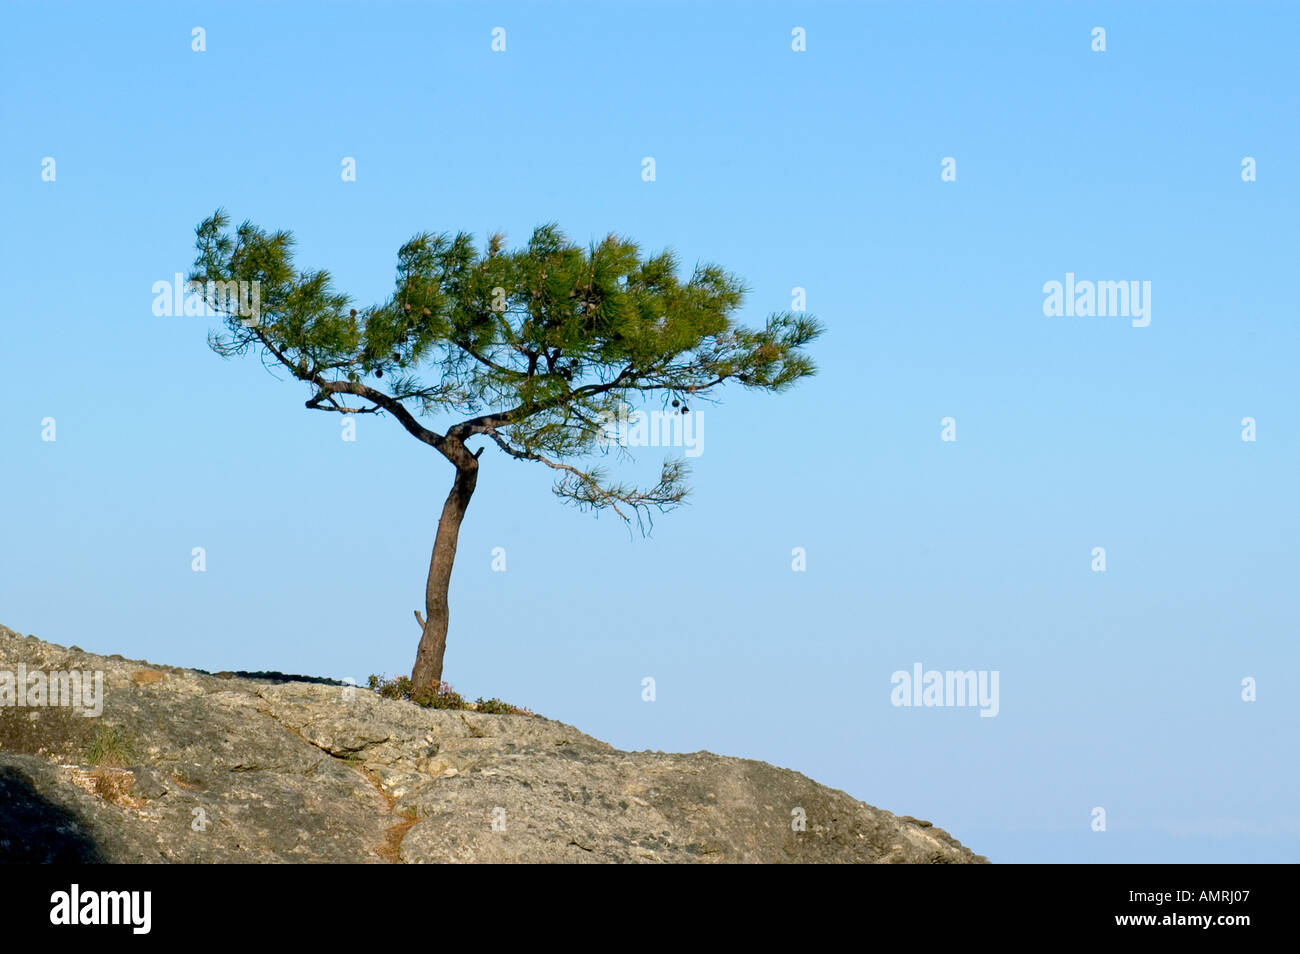 Baum Pinie auf einem Felsen vor Himmel pino árbol creciendo sobre una roca en frente del cielo Foto de stock